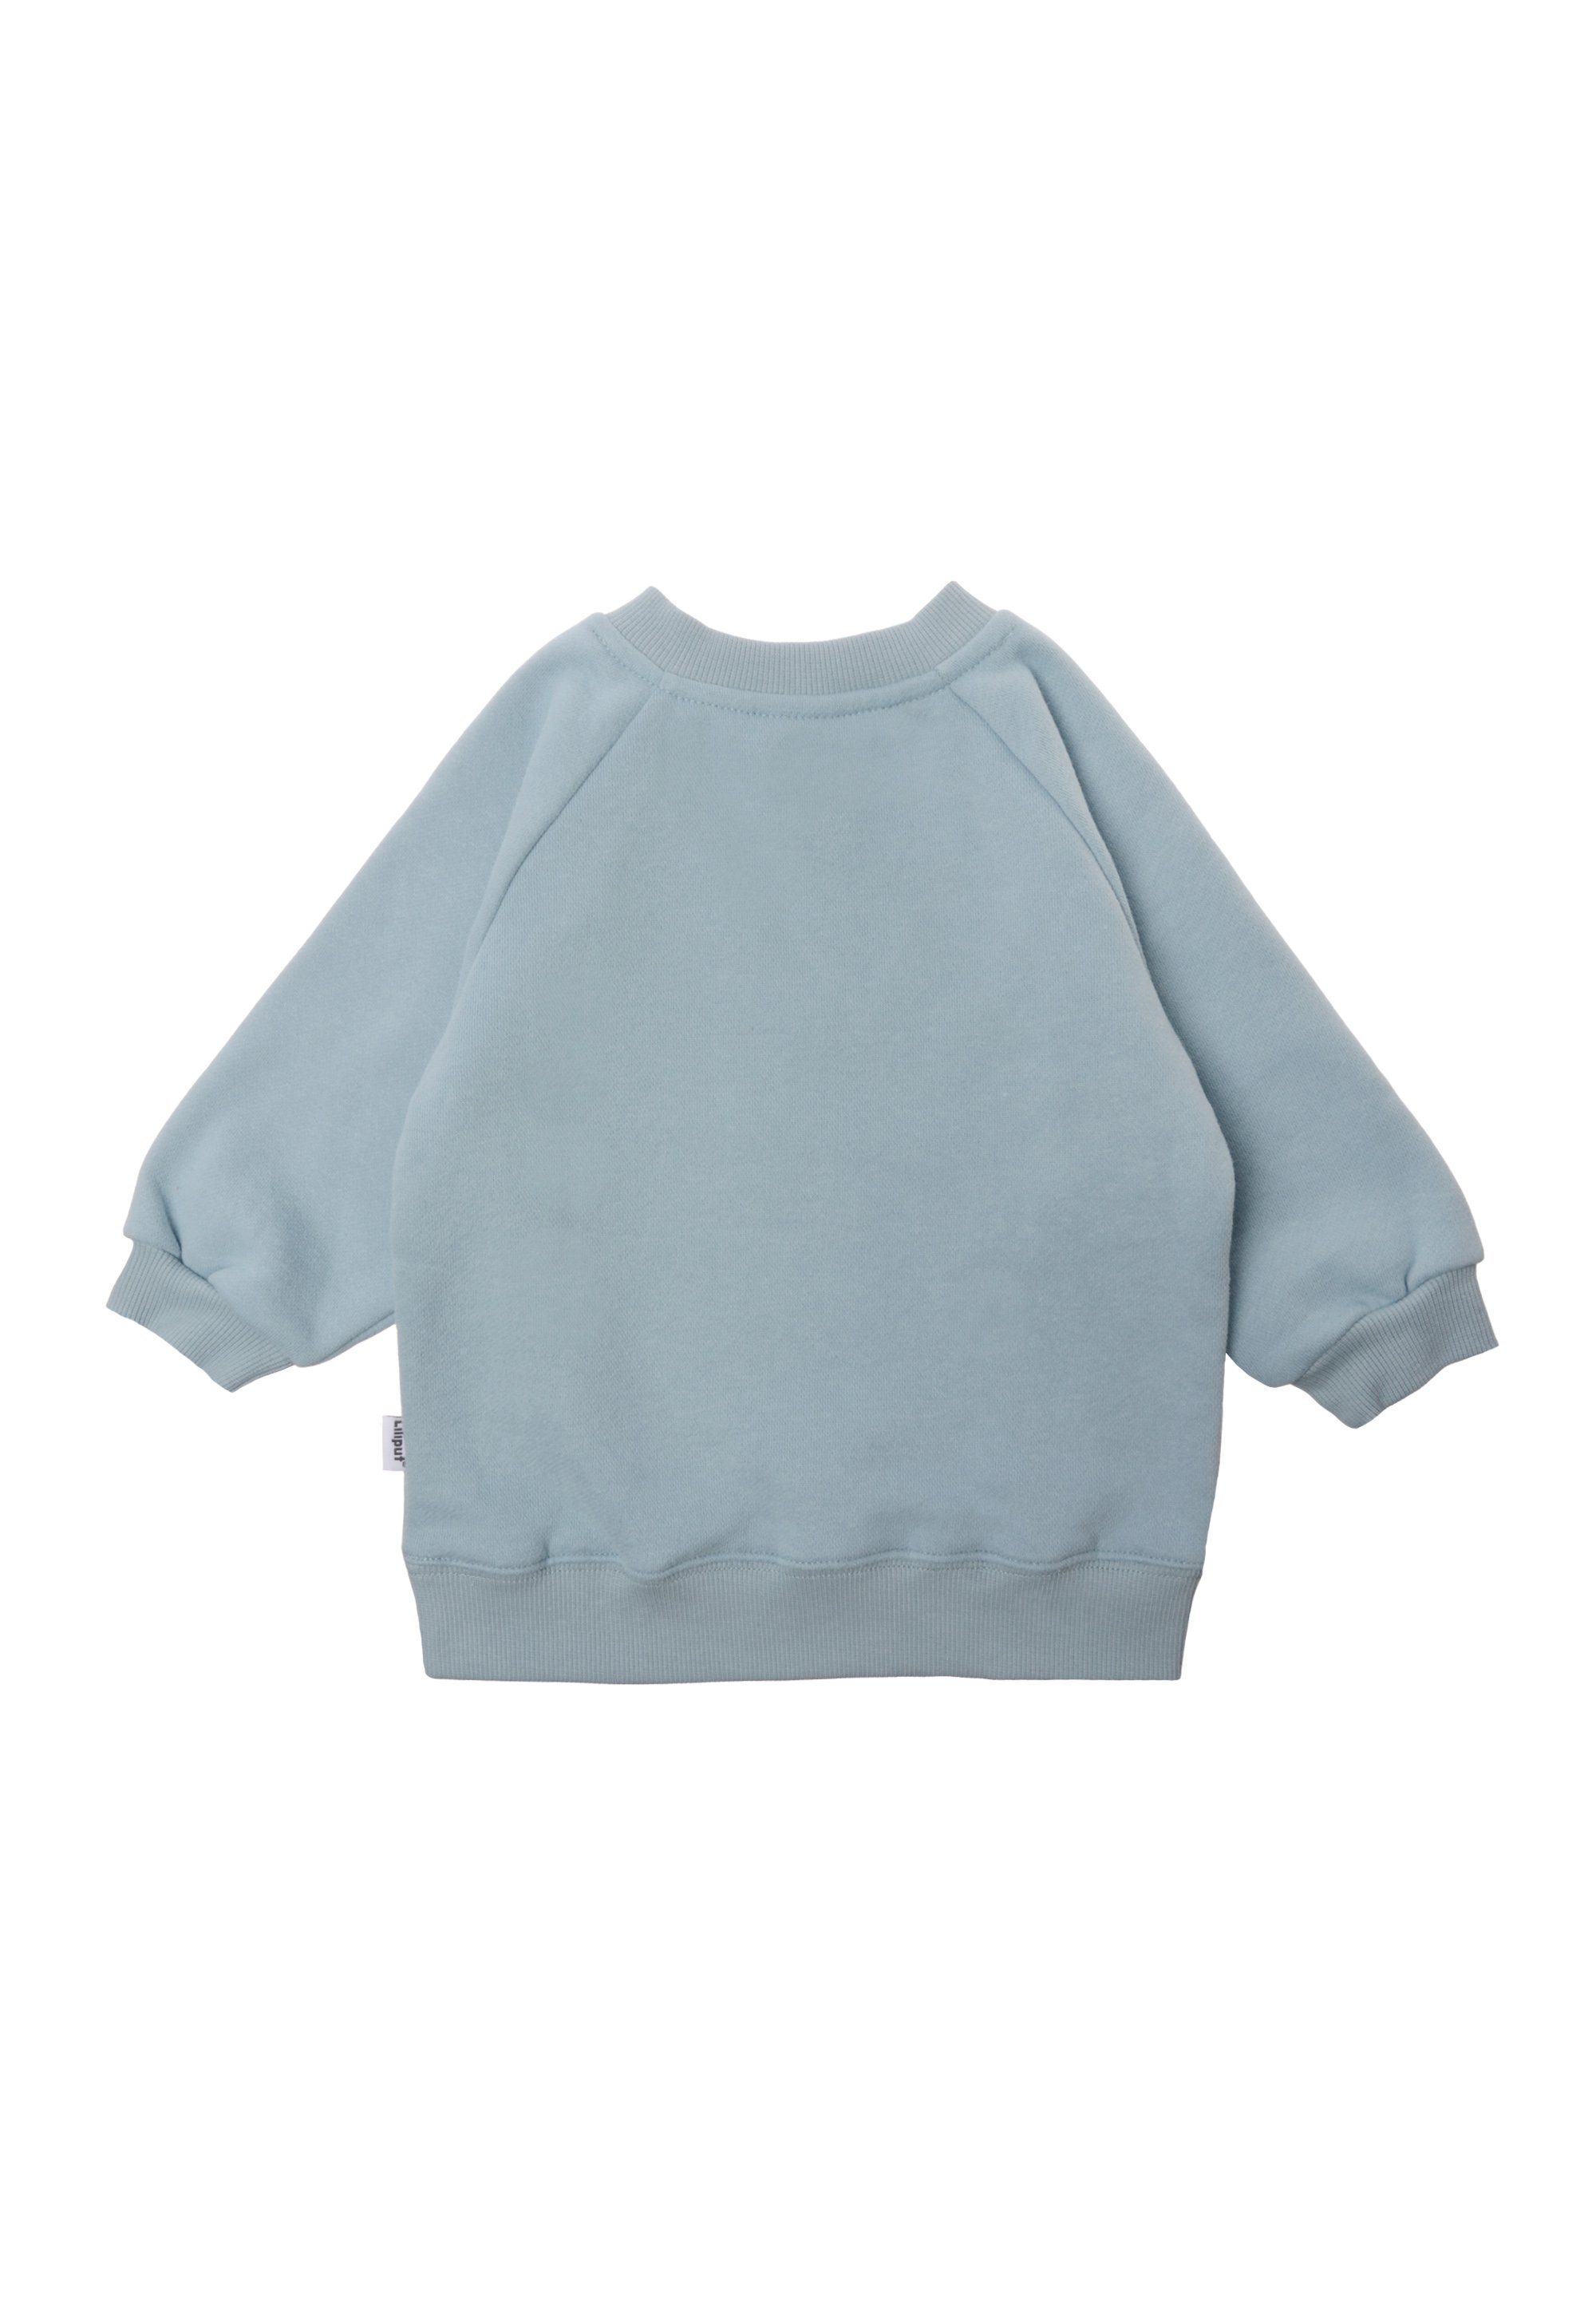 Liliput Sweatshirt weichem Baumwoll-Material aus Ocean child